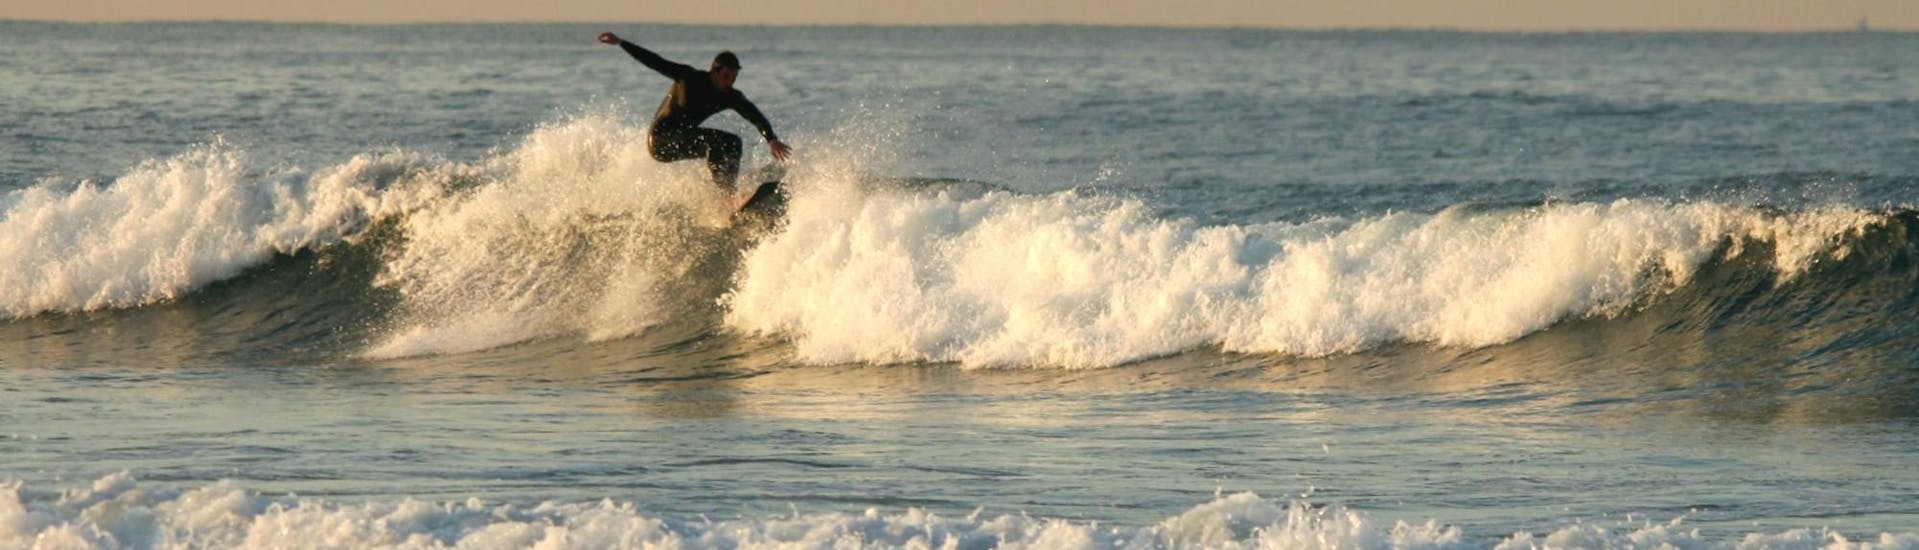 Curso de Surf Privado en Matosinhos a partir de 5 años para todos los niveles.